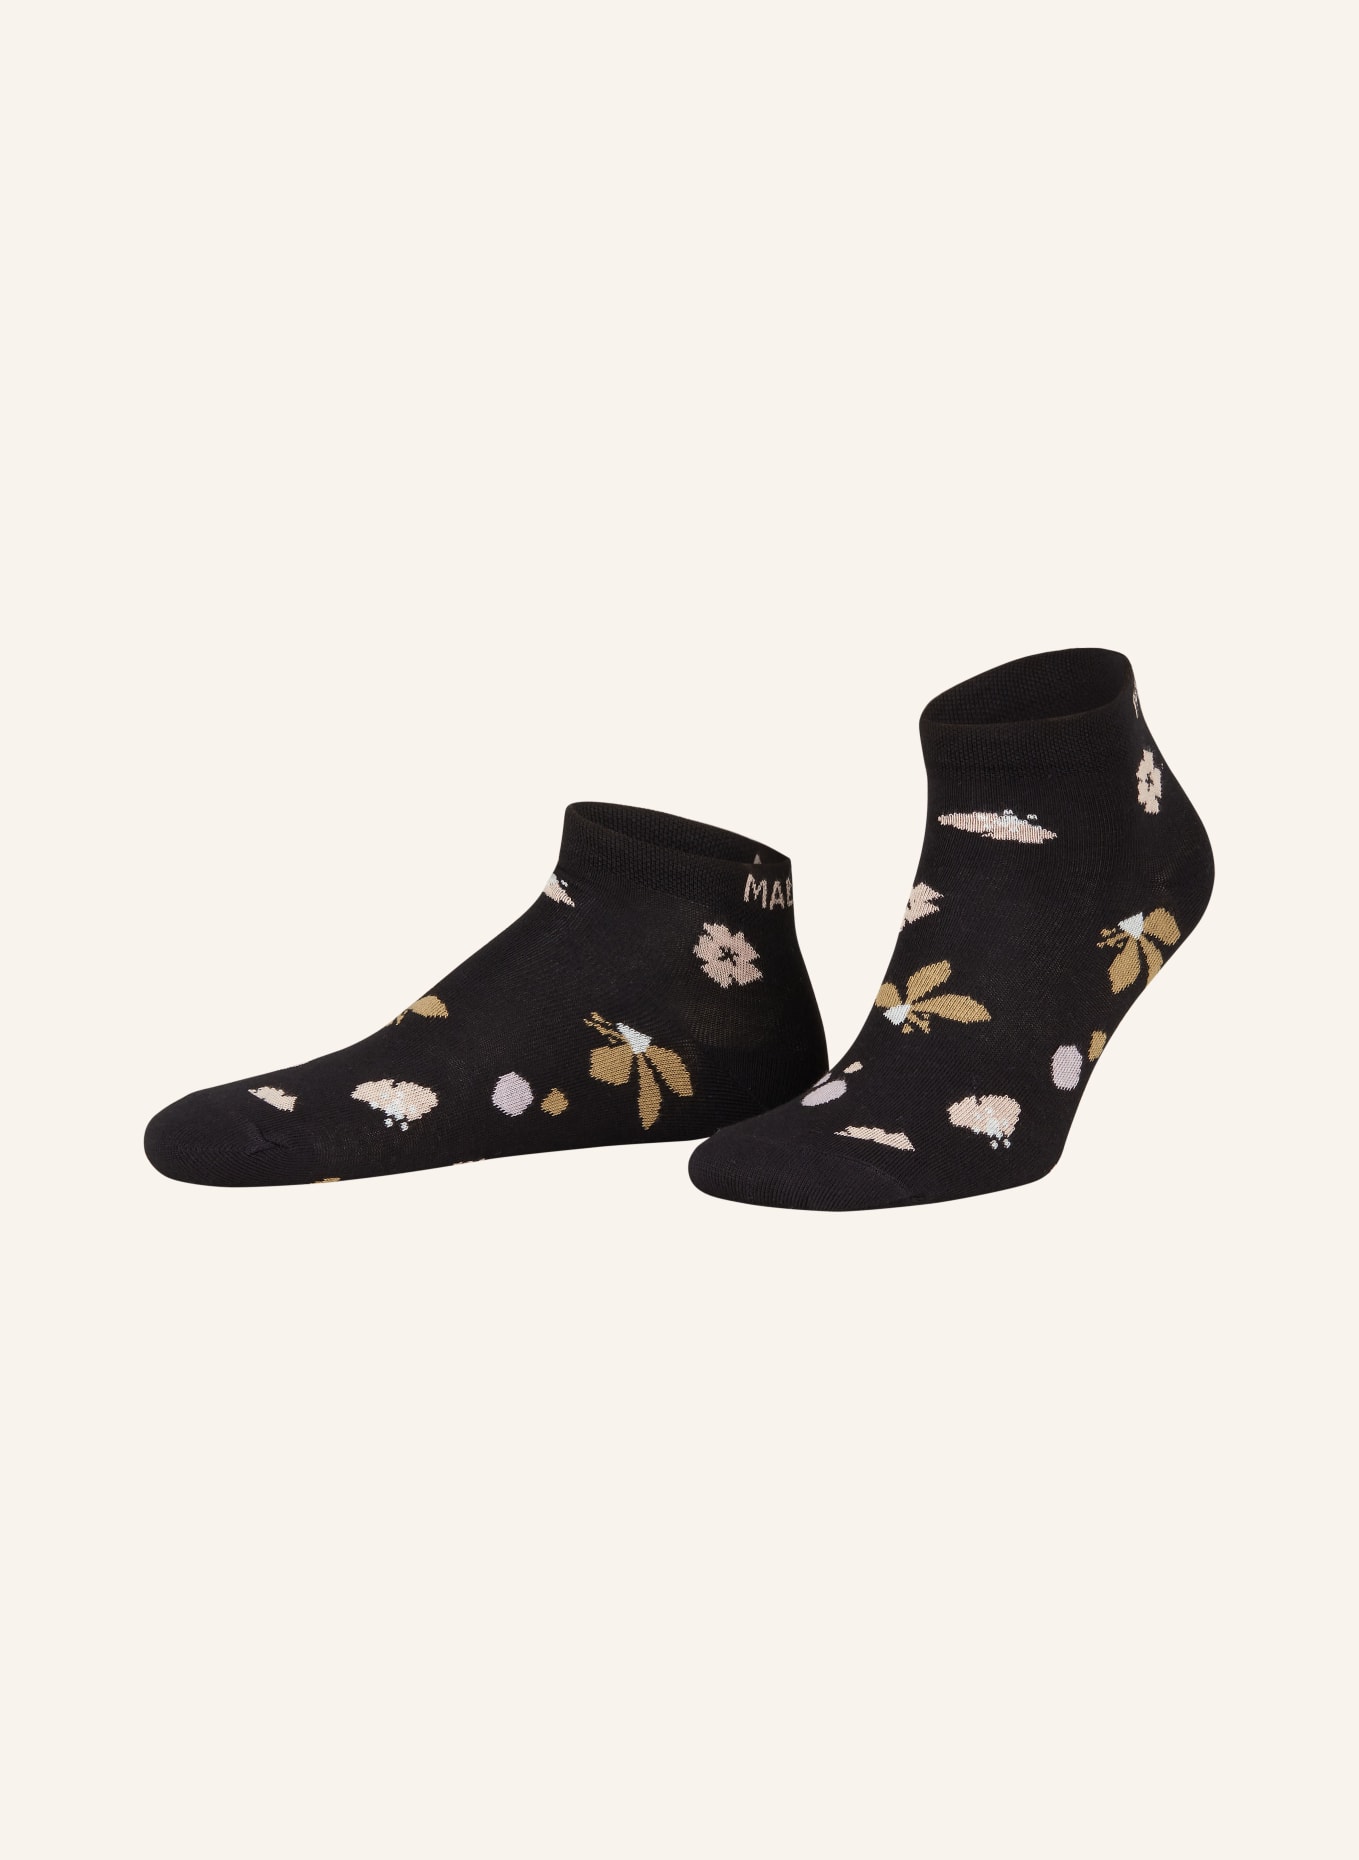 maloja Sneaker socks RIMSM., Color: 8833 deep black (Image 1)